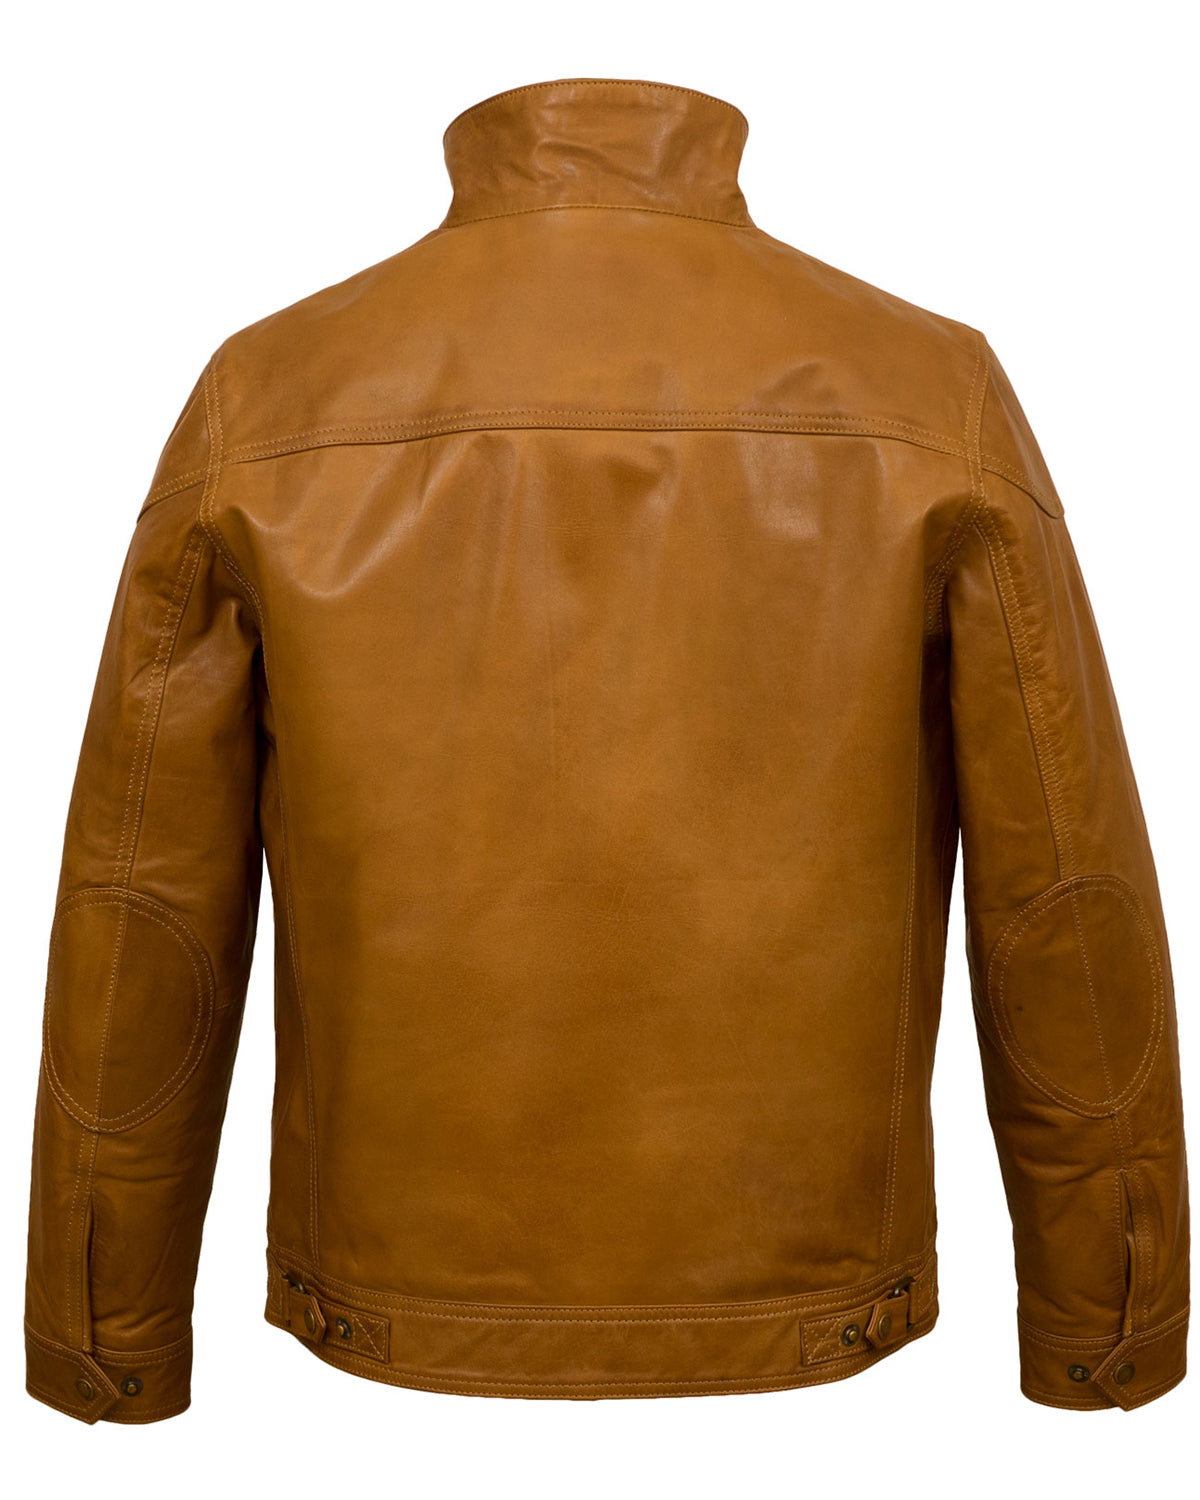 Tanned Brown Leather Jacket For Men | Elite Jacket